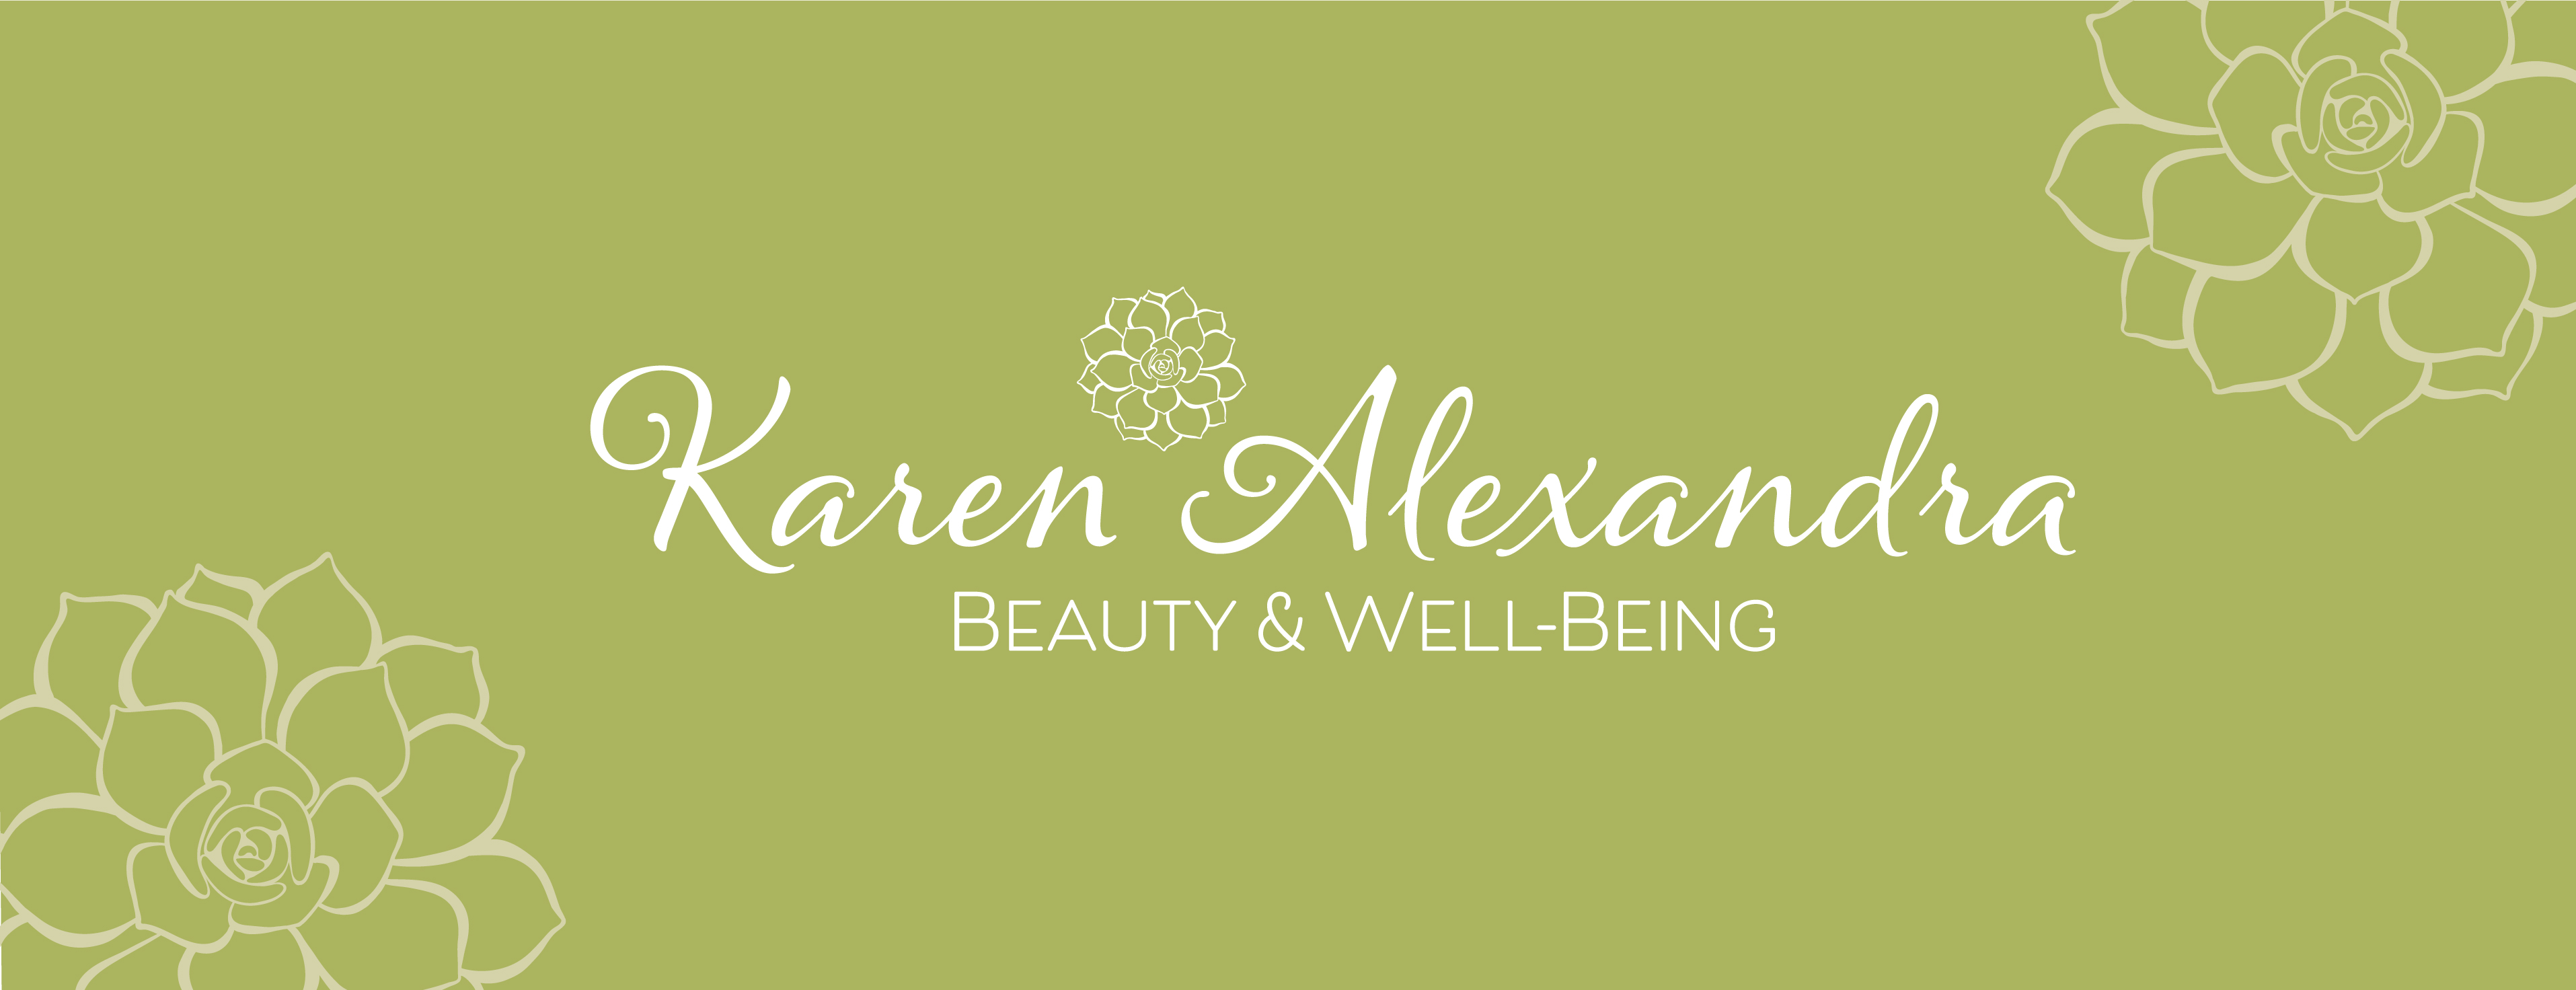 KAREN ALEXANDRA BEAUTY & WELLBEING logo